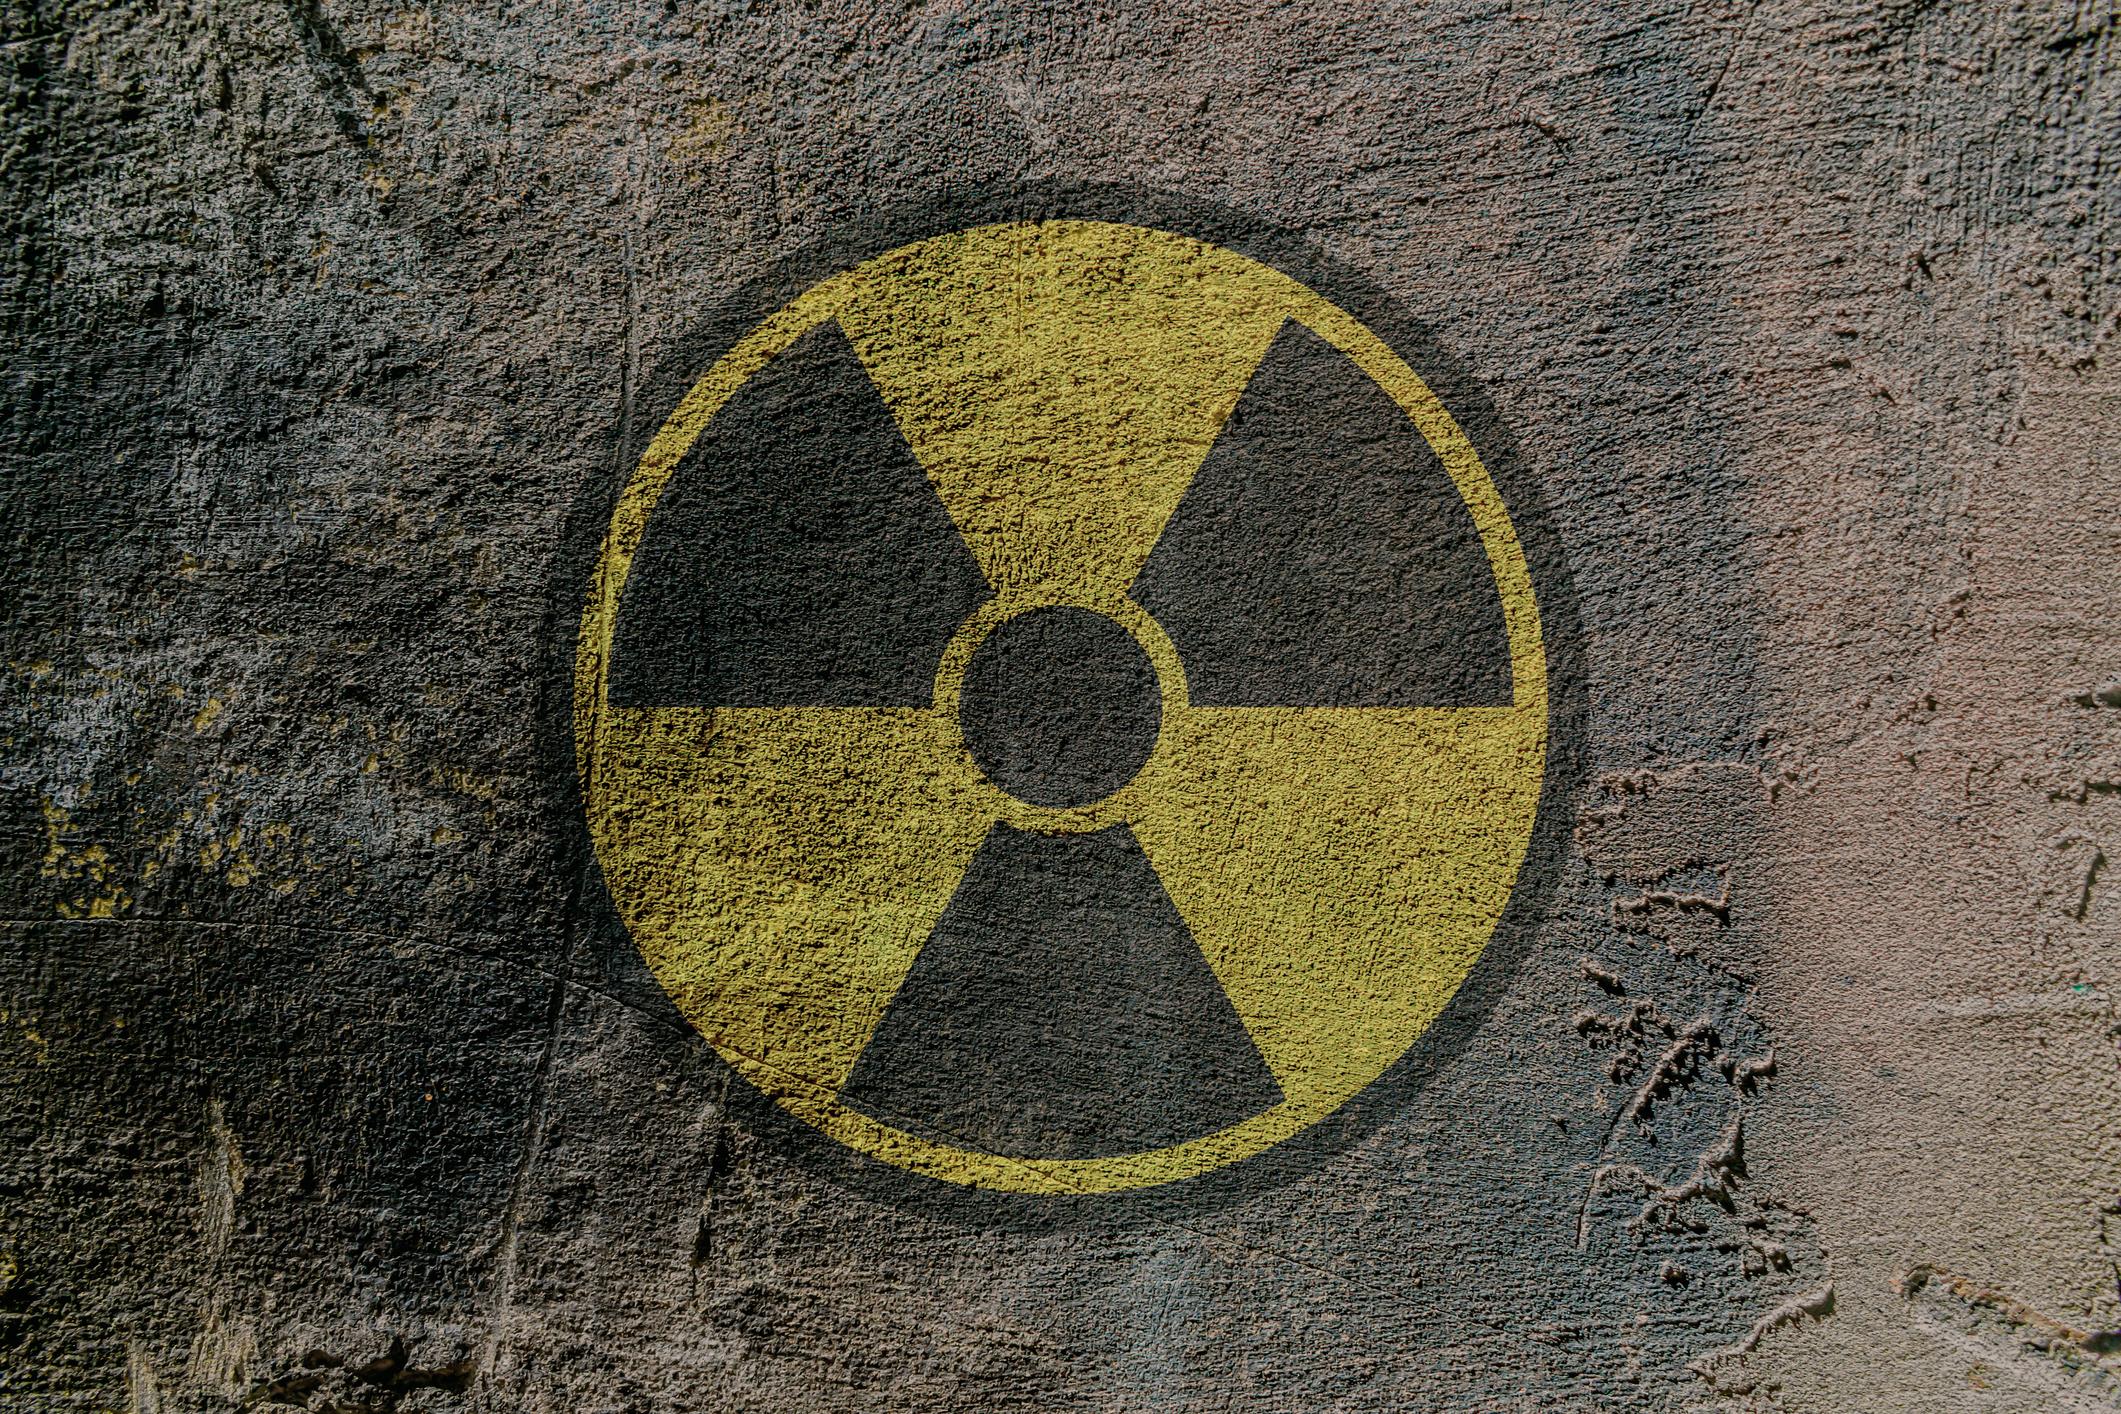 Radioactivité : un médicament pour prévenir des risques de contamination ?